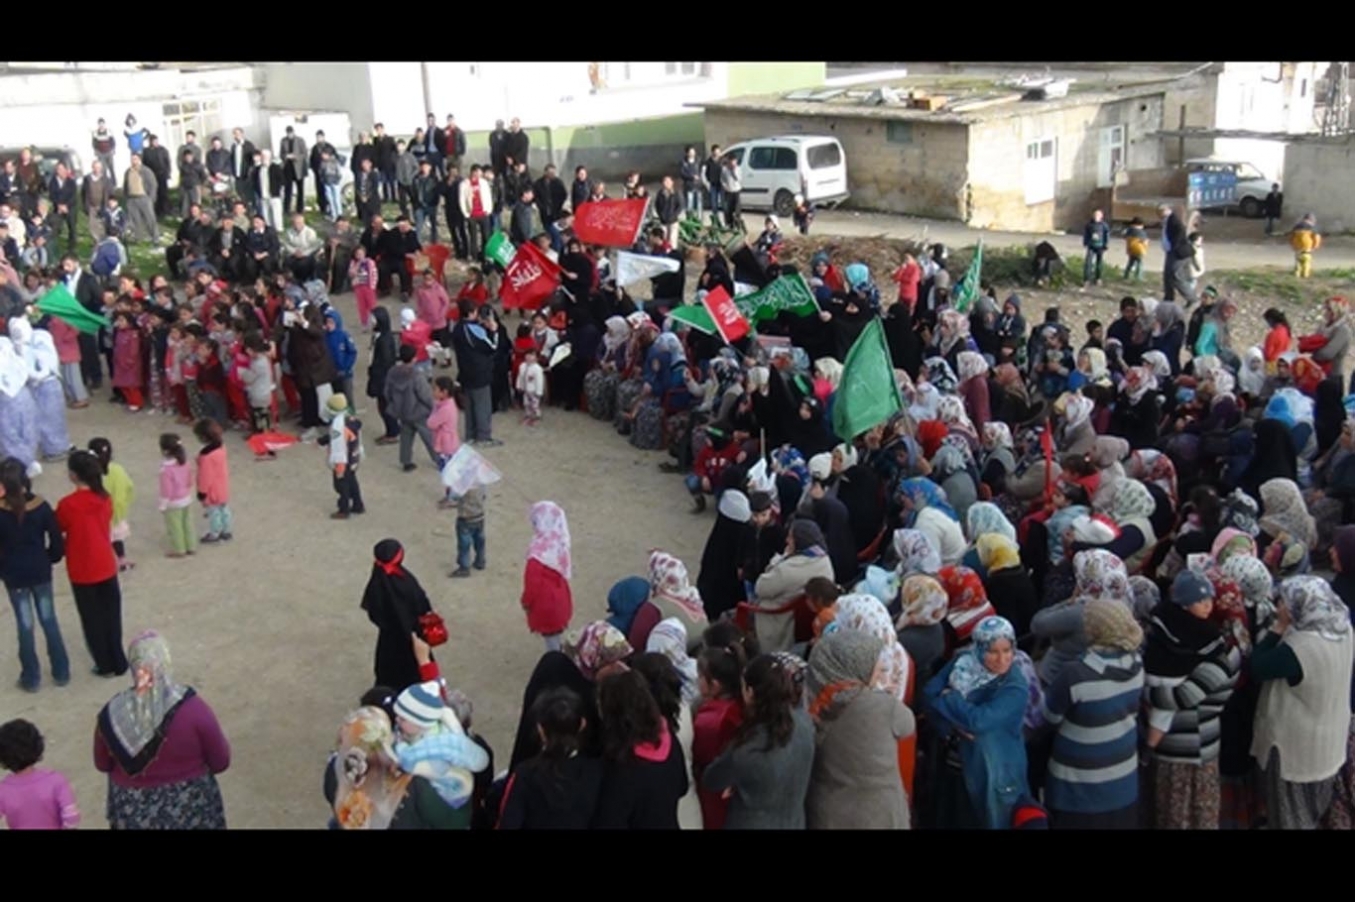 Gaziantep’in Bilek köyünde Kutlu Doğum etkinliği